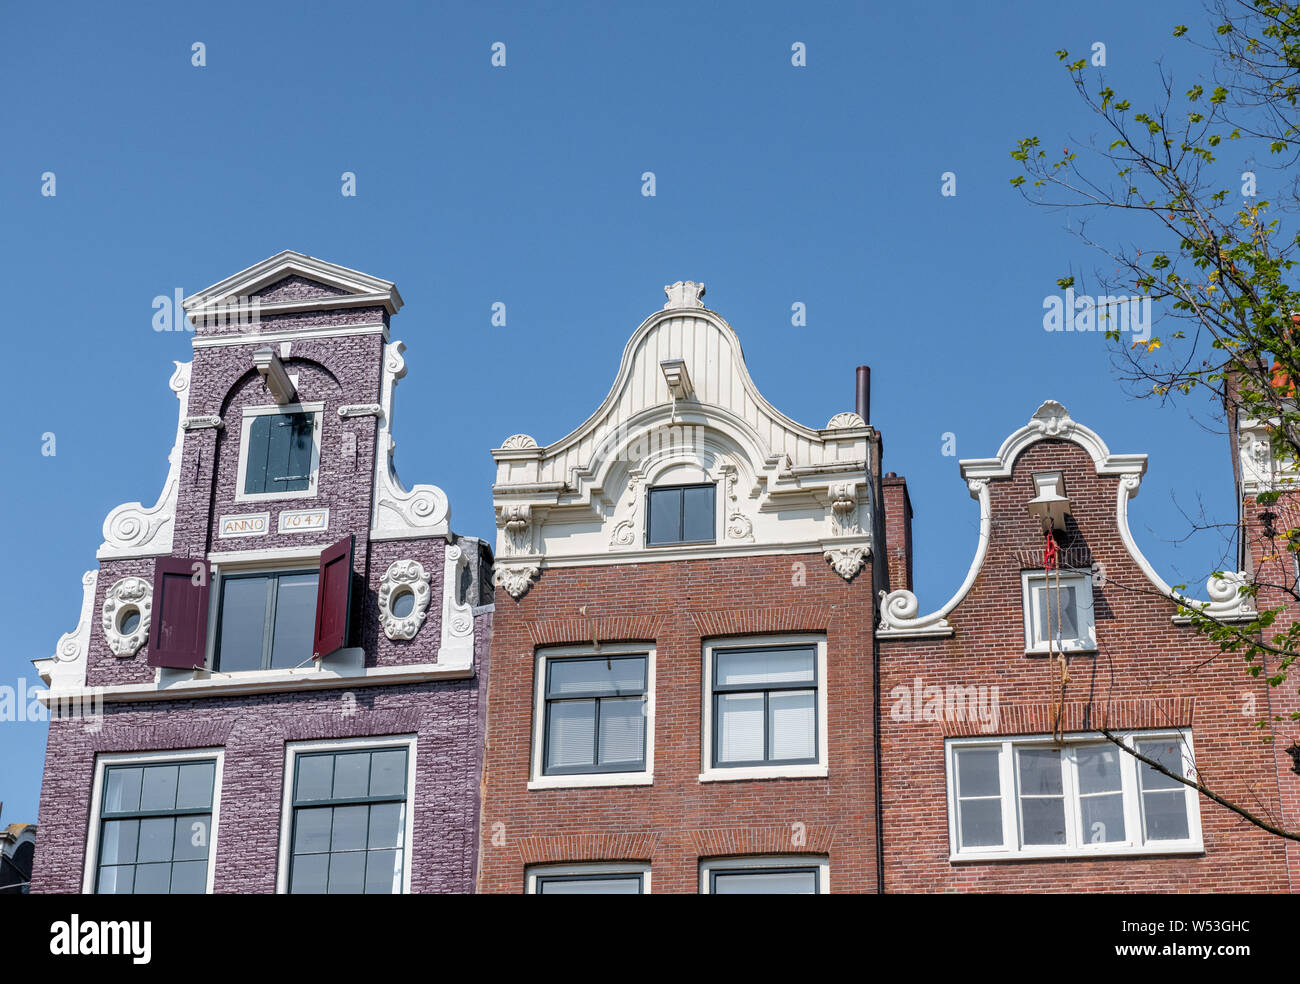 Typische holländische Canal House styles. Stockfoto